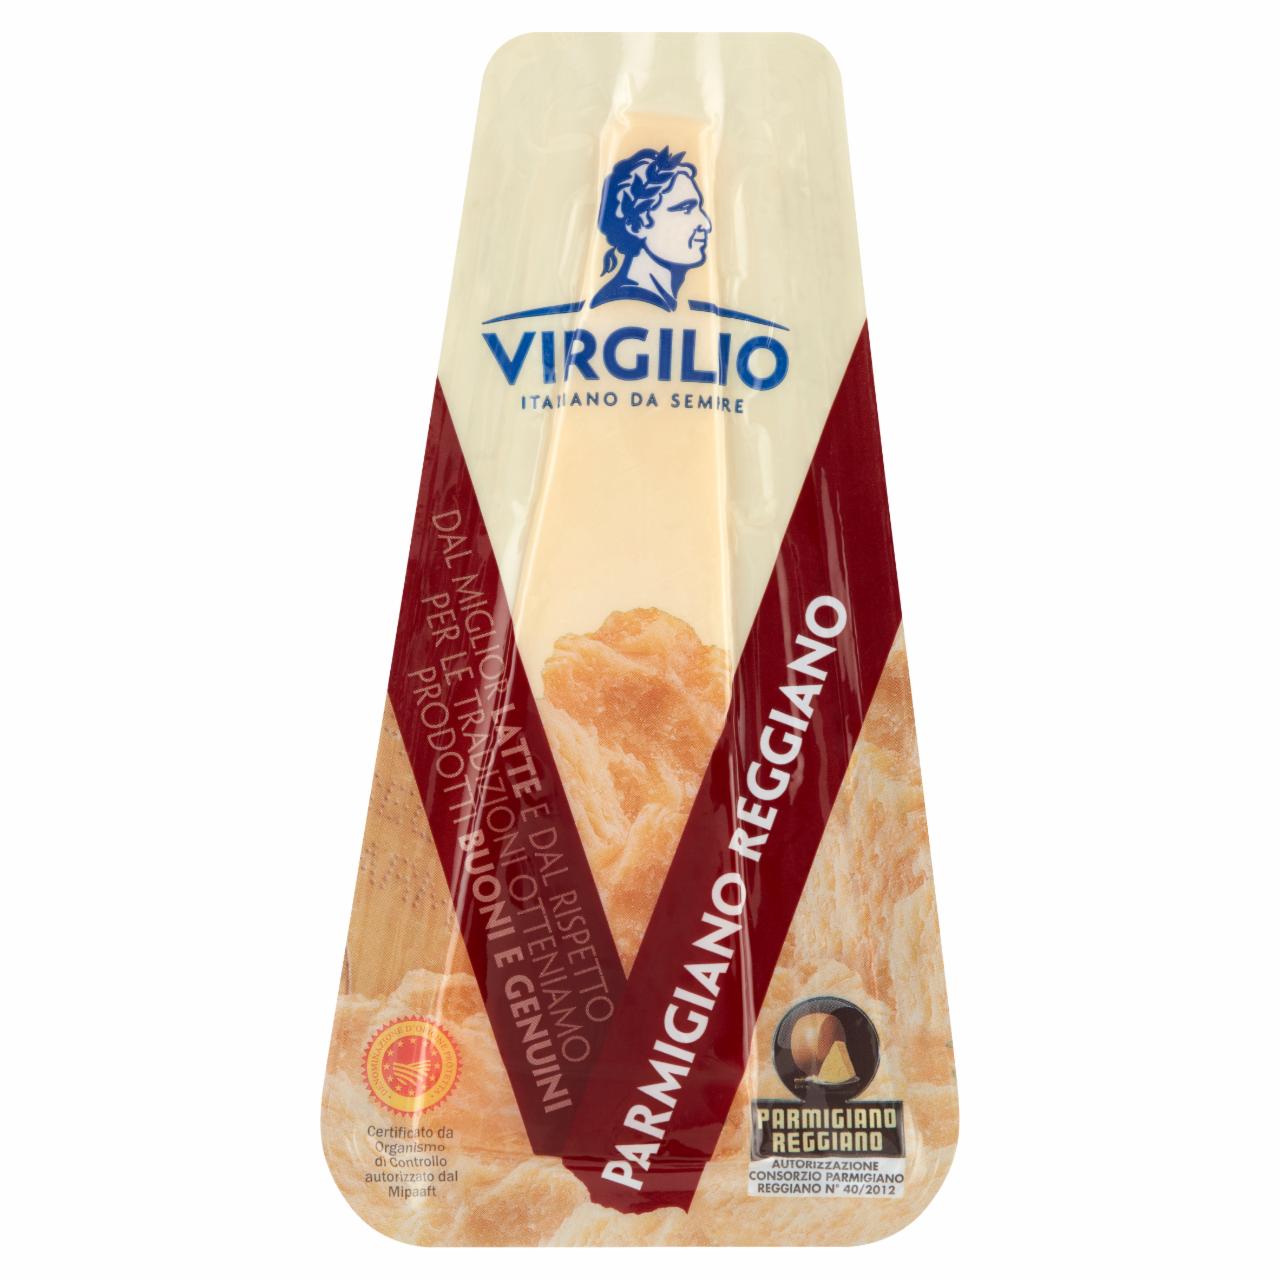 Képek - Virgilio Parmigiano Reggiano félzsíros, kemény sajt 150 g